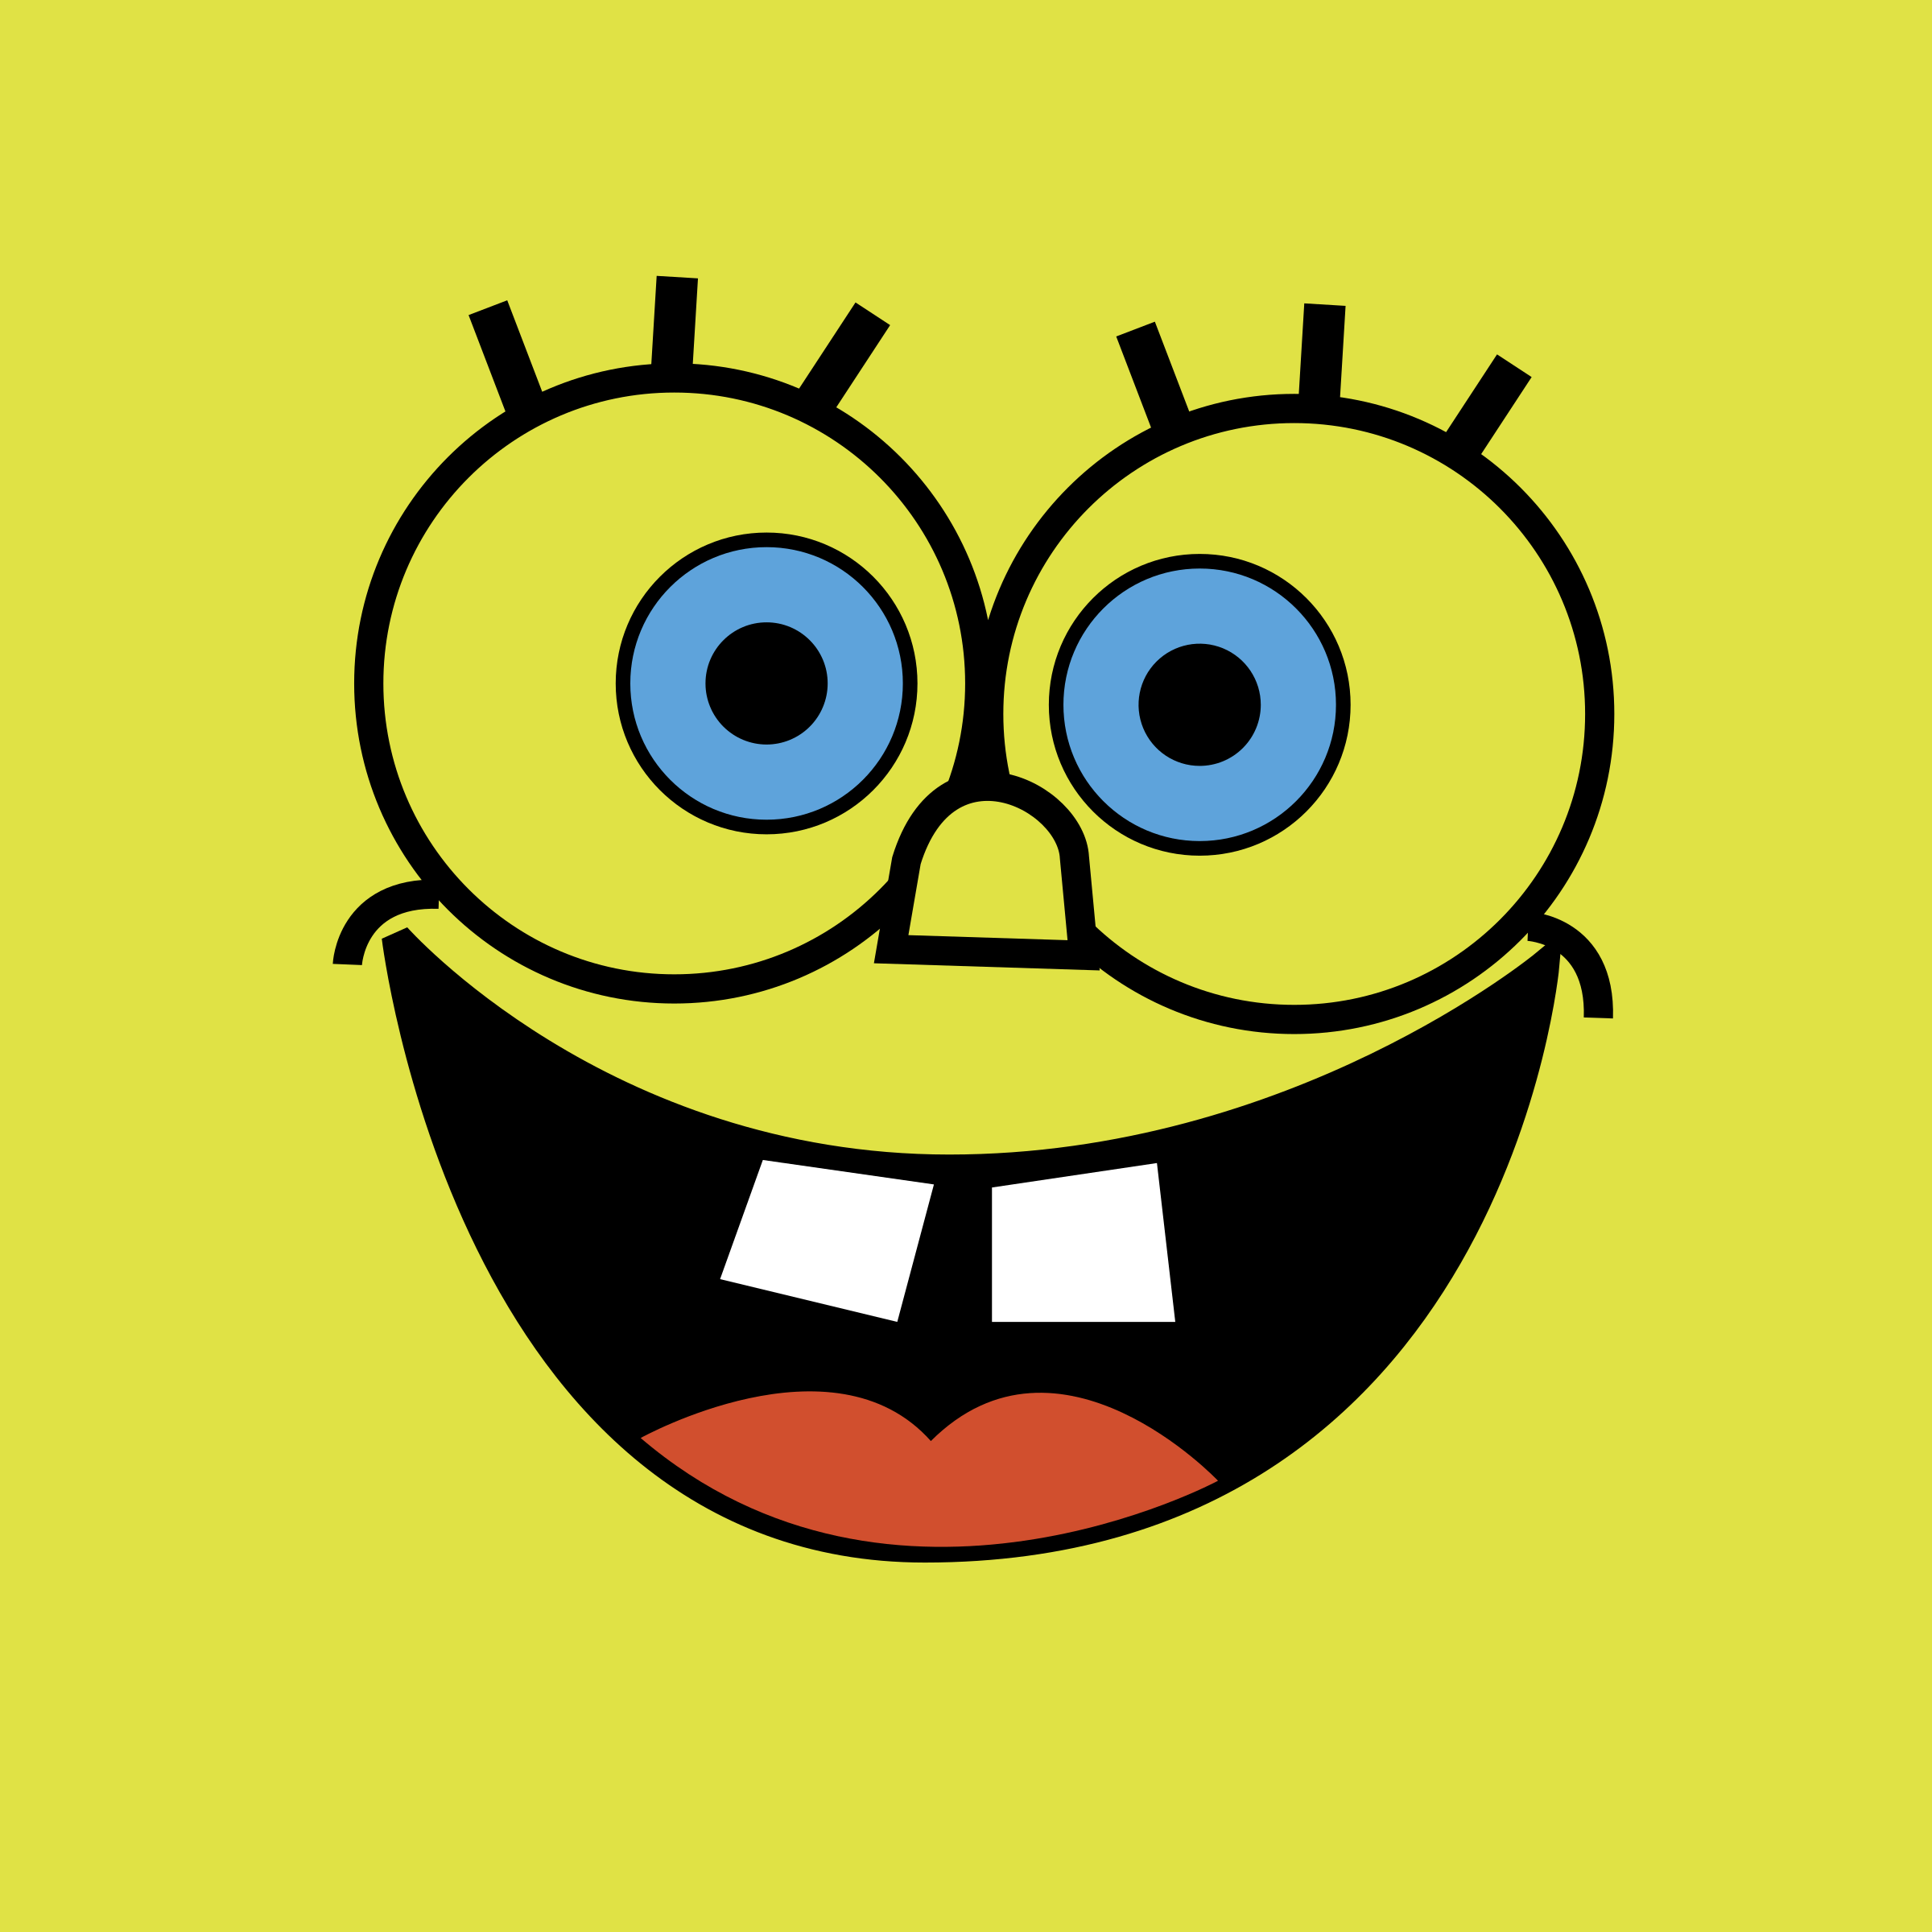 Spongebob SquarePants Logo - LogoDix